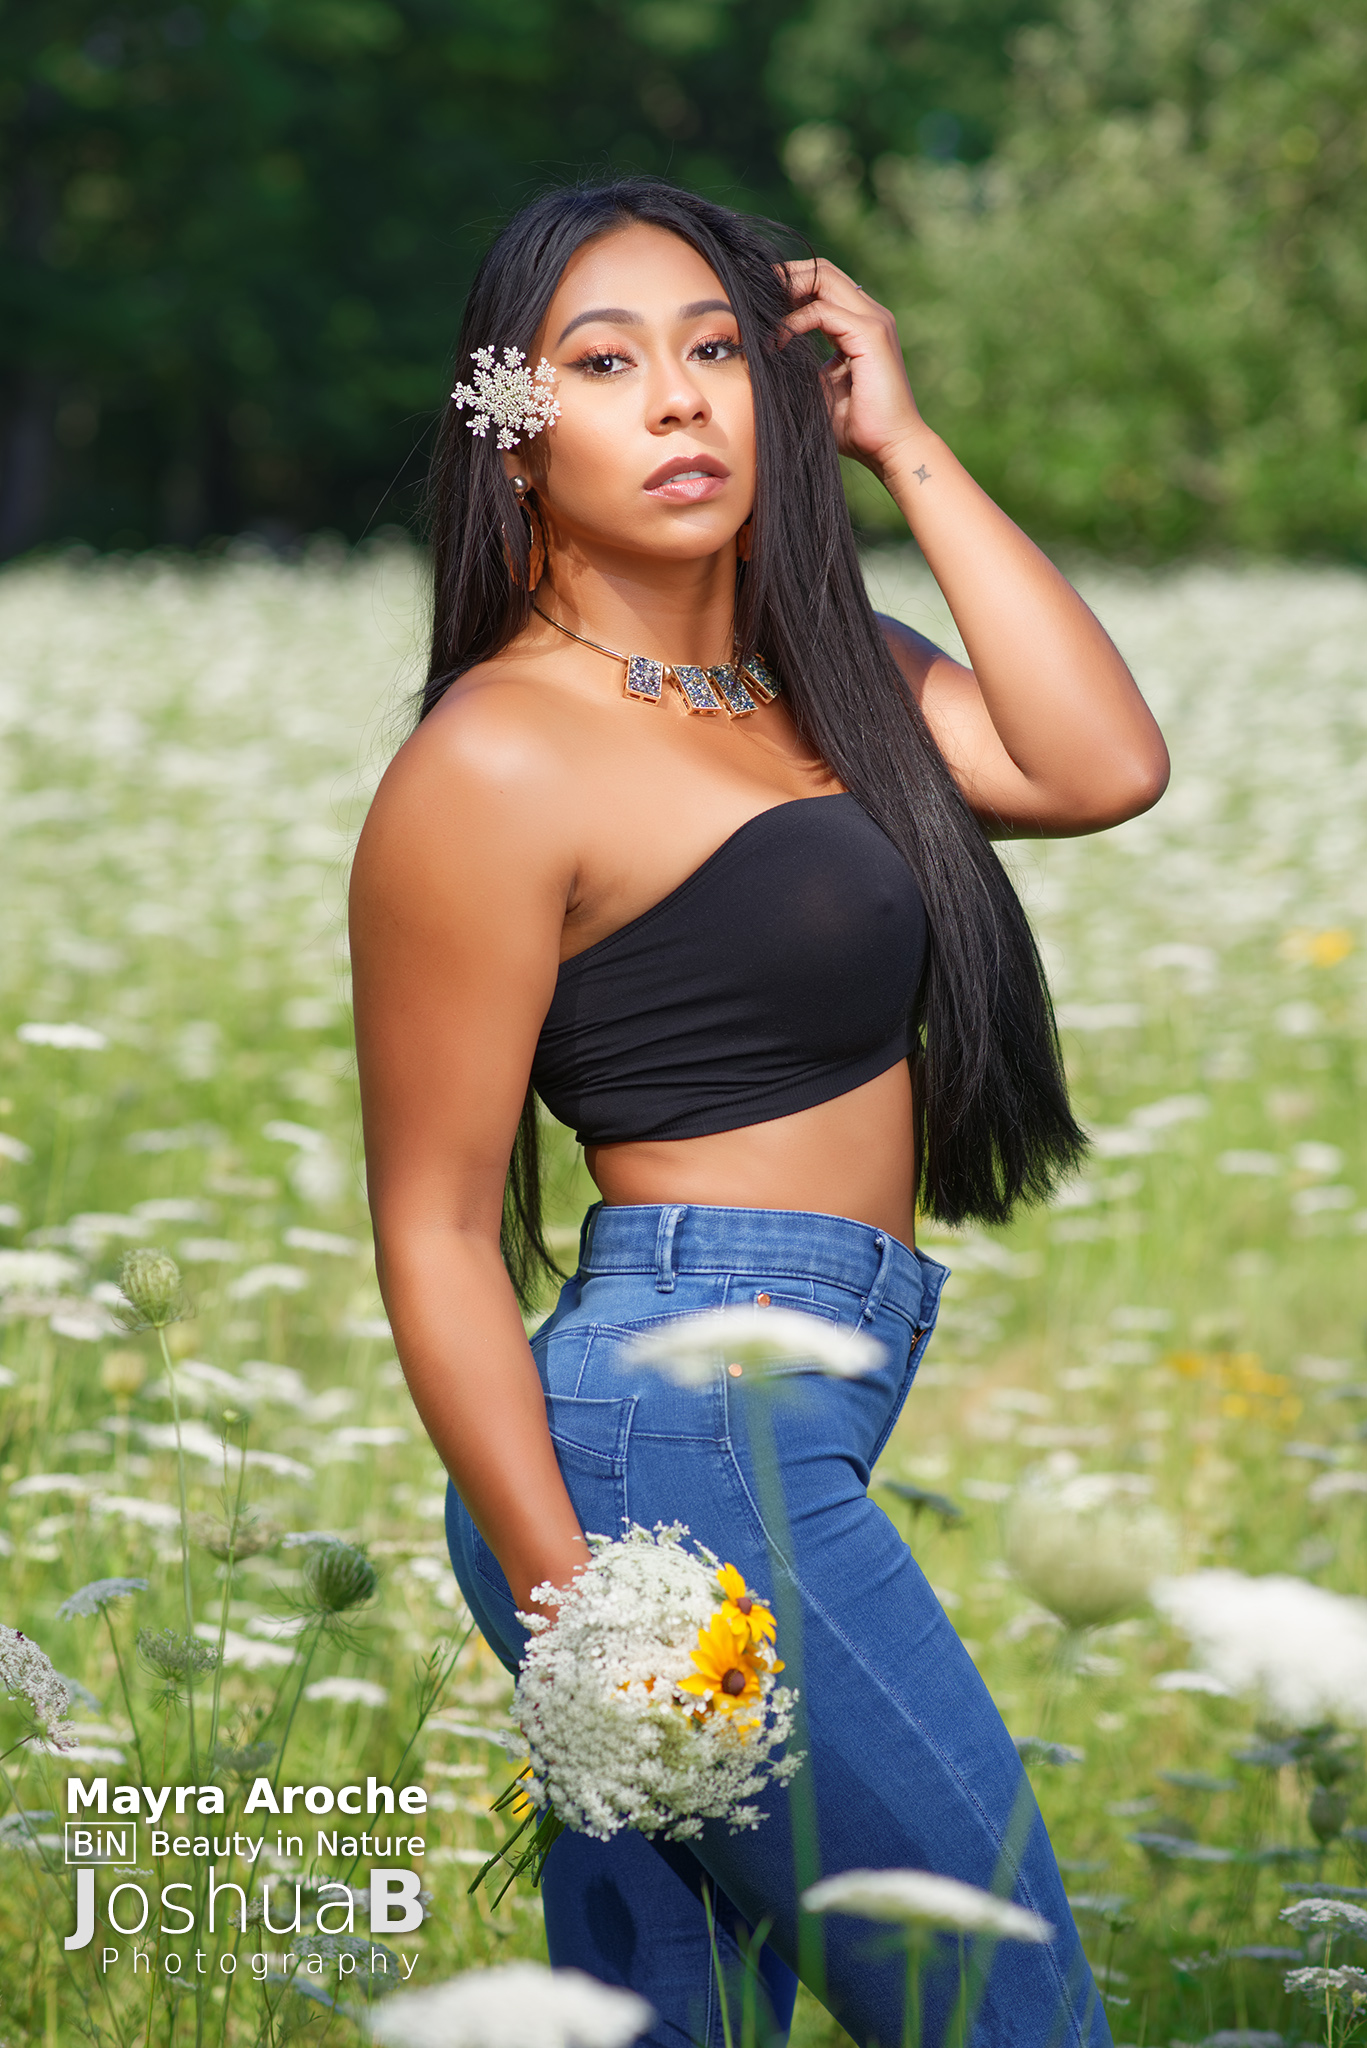 Beautiful Latina woman wearing tube top in wildflowers